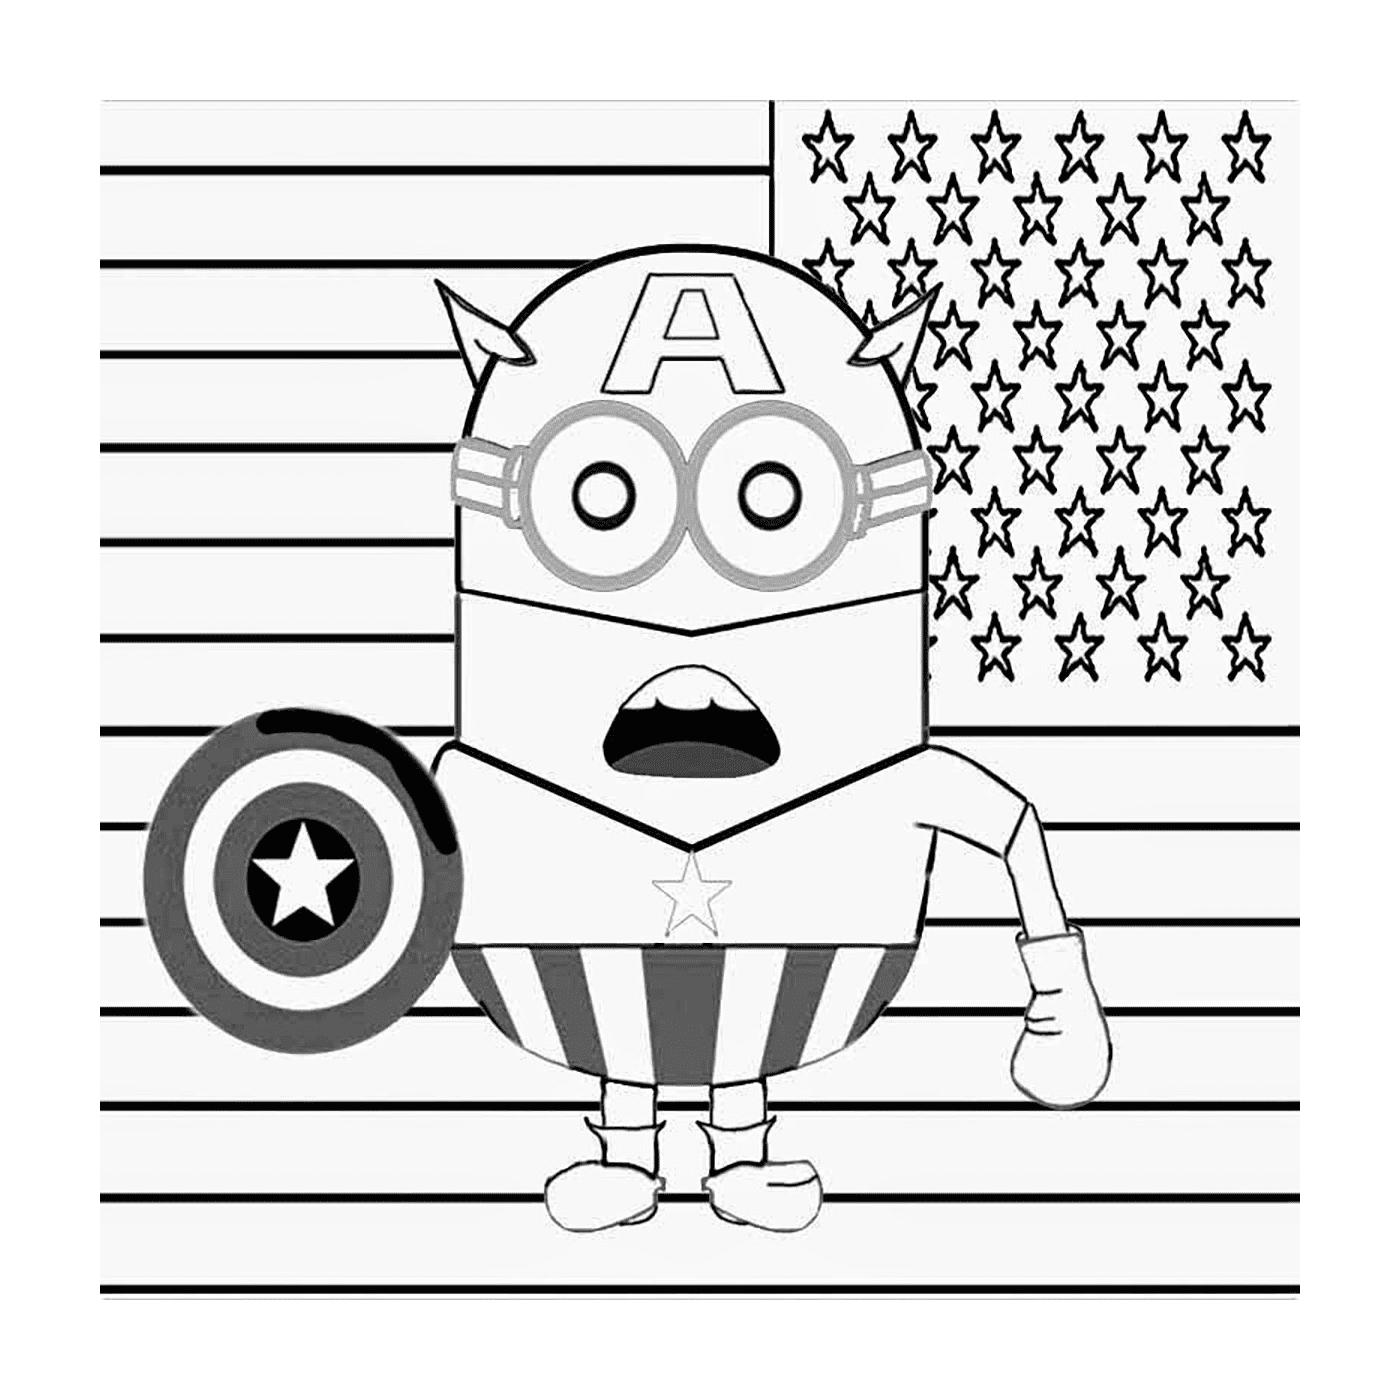  Super-herói, Capitão América 